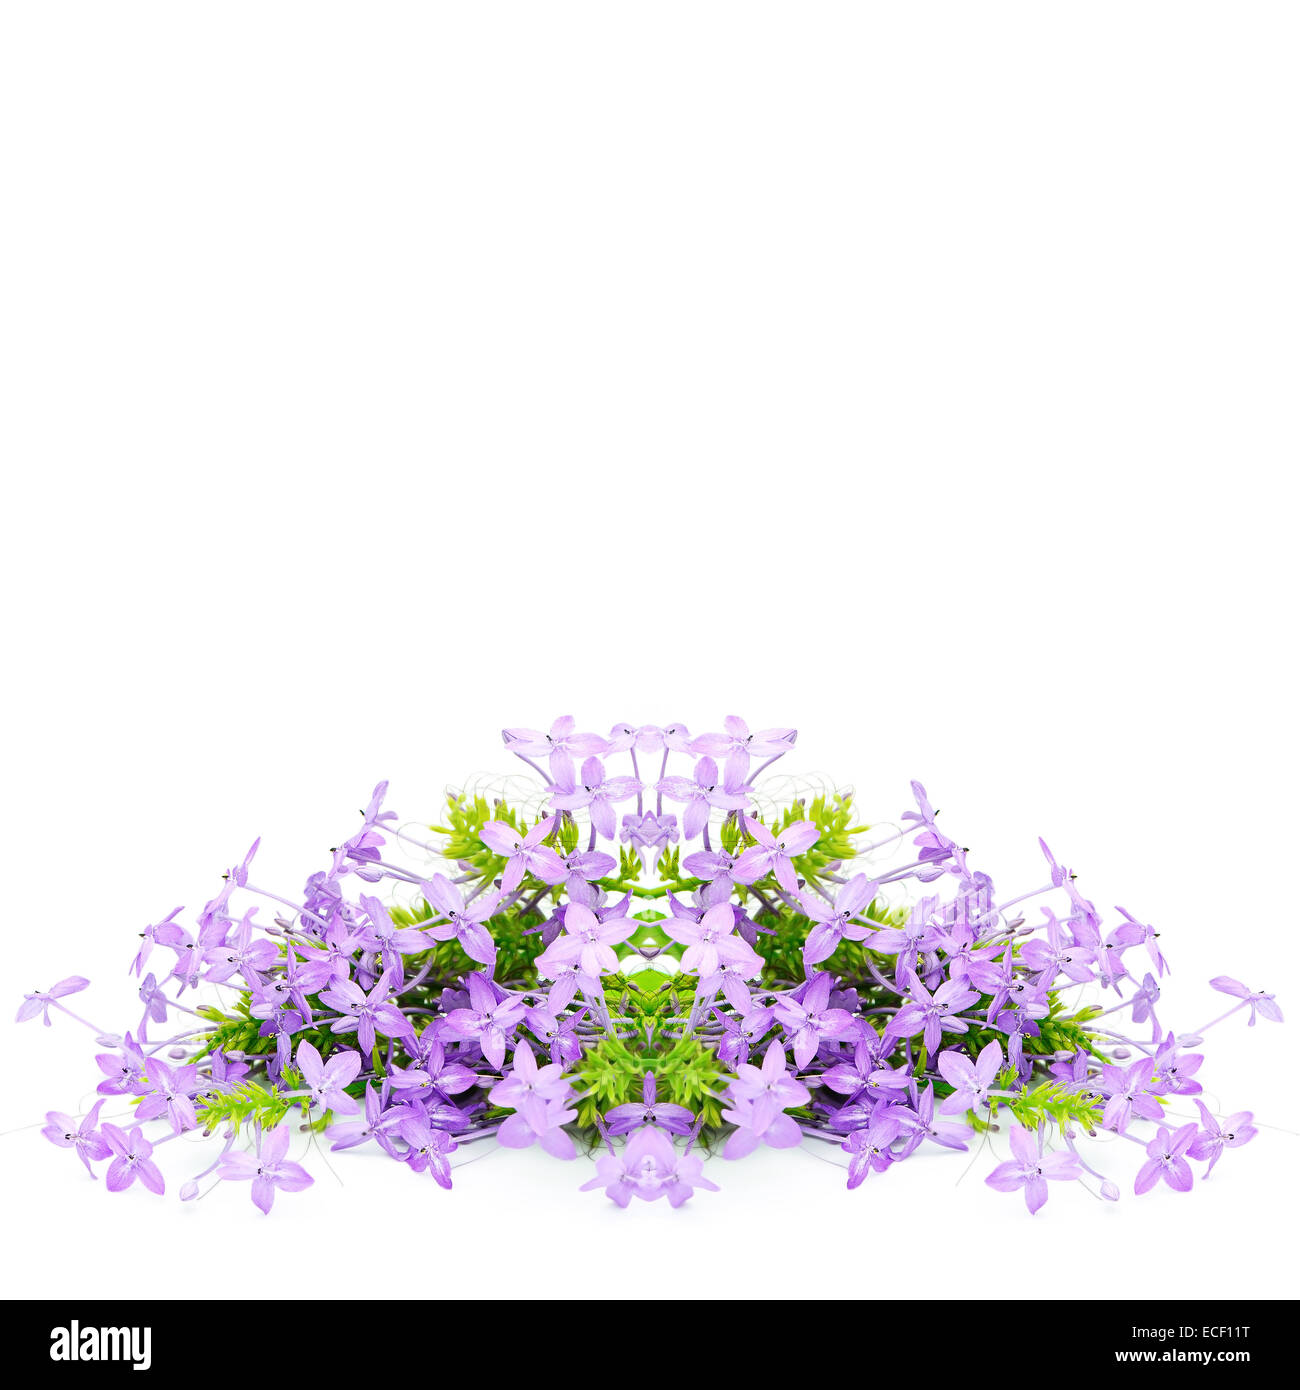 Oranger fleur violette, Violette Ixora (Pseuderanthemum andersonii), isolé sur fond blanc Banque D'Images